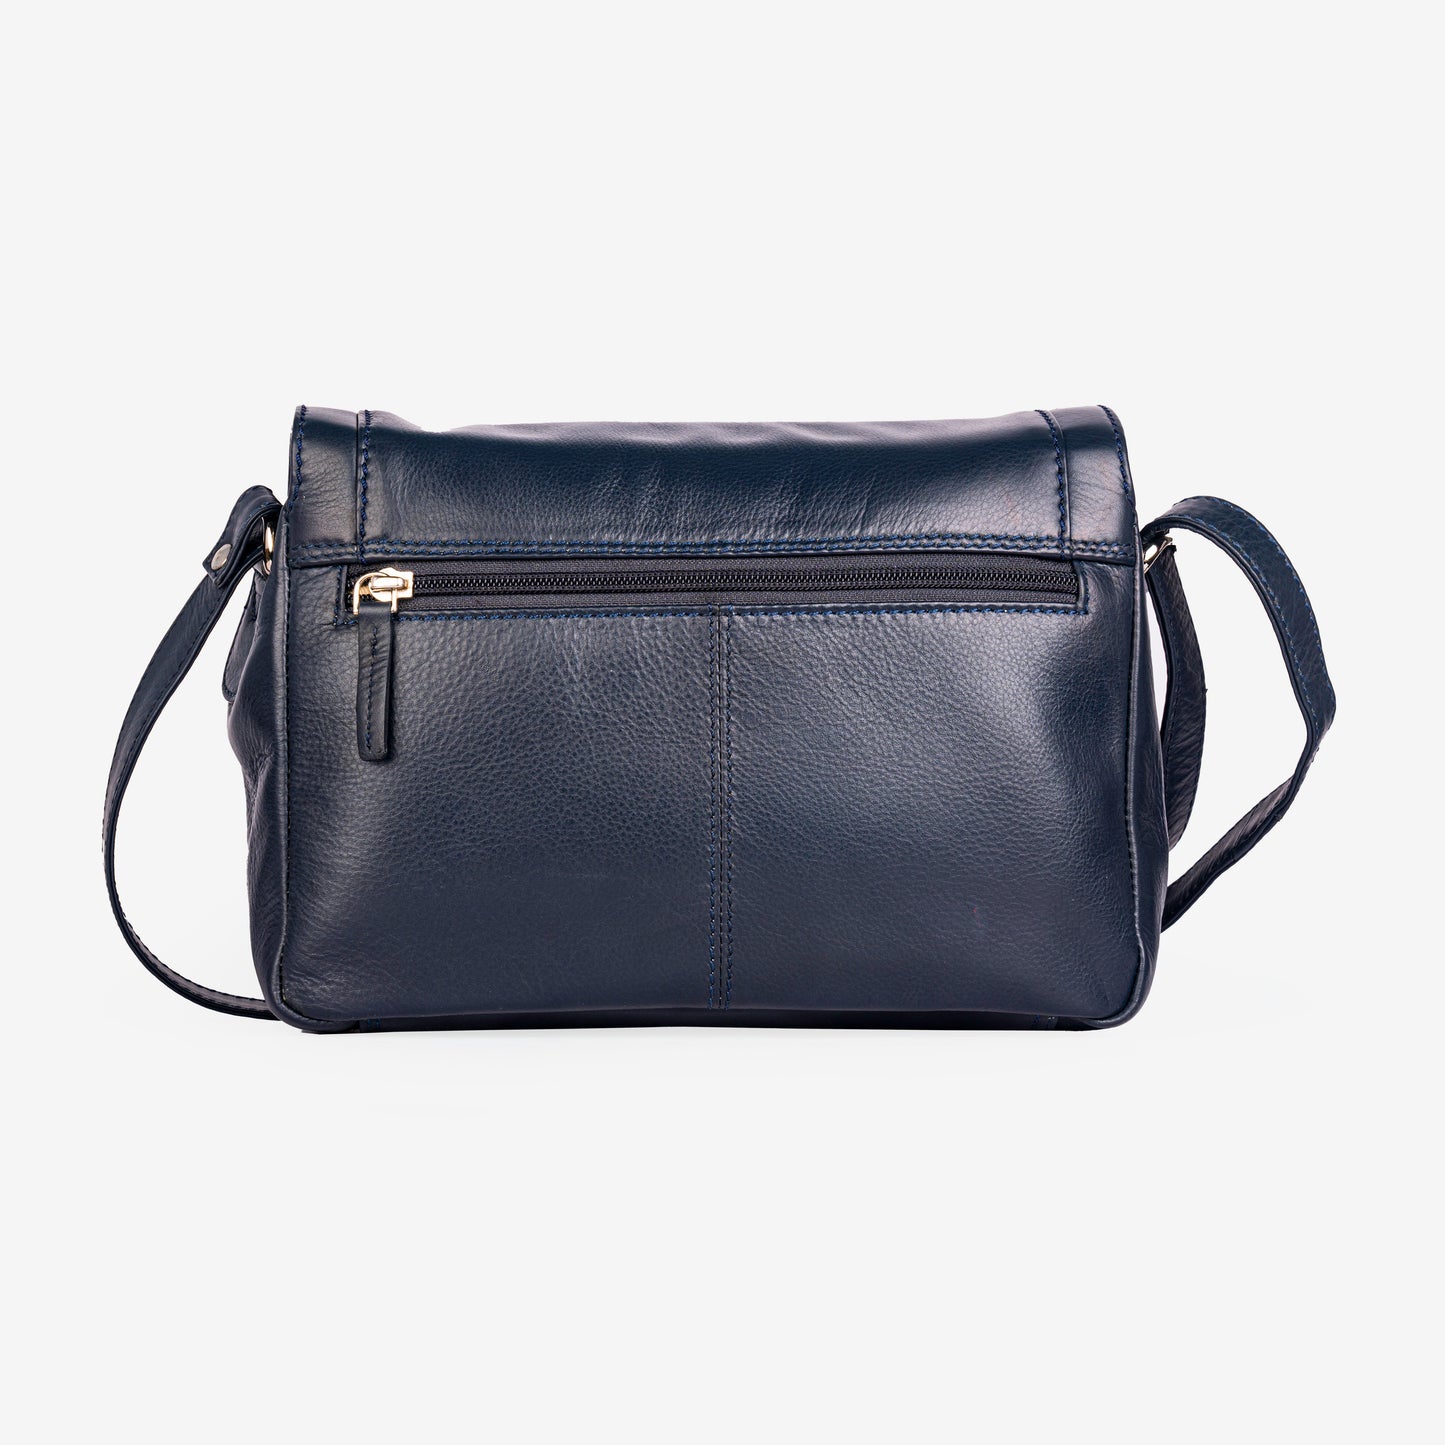 GT-KH2: Classic Leather Flapover Handbag, Shoulder Bag with Long Adjustable Shoulder Strap by Grains & Tan